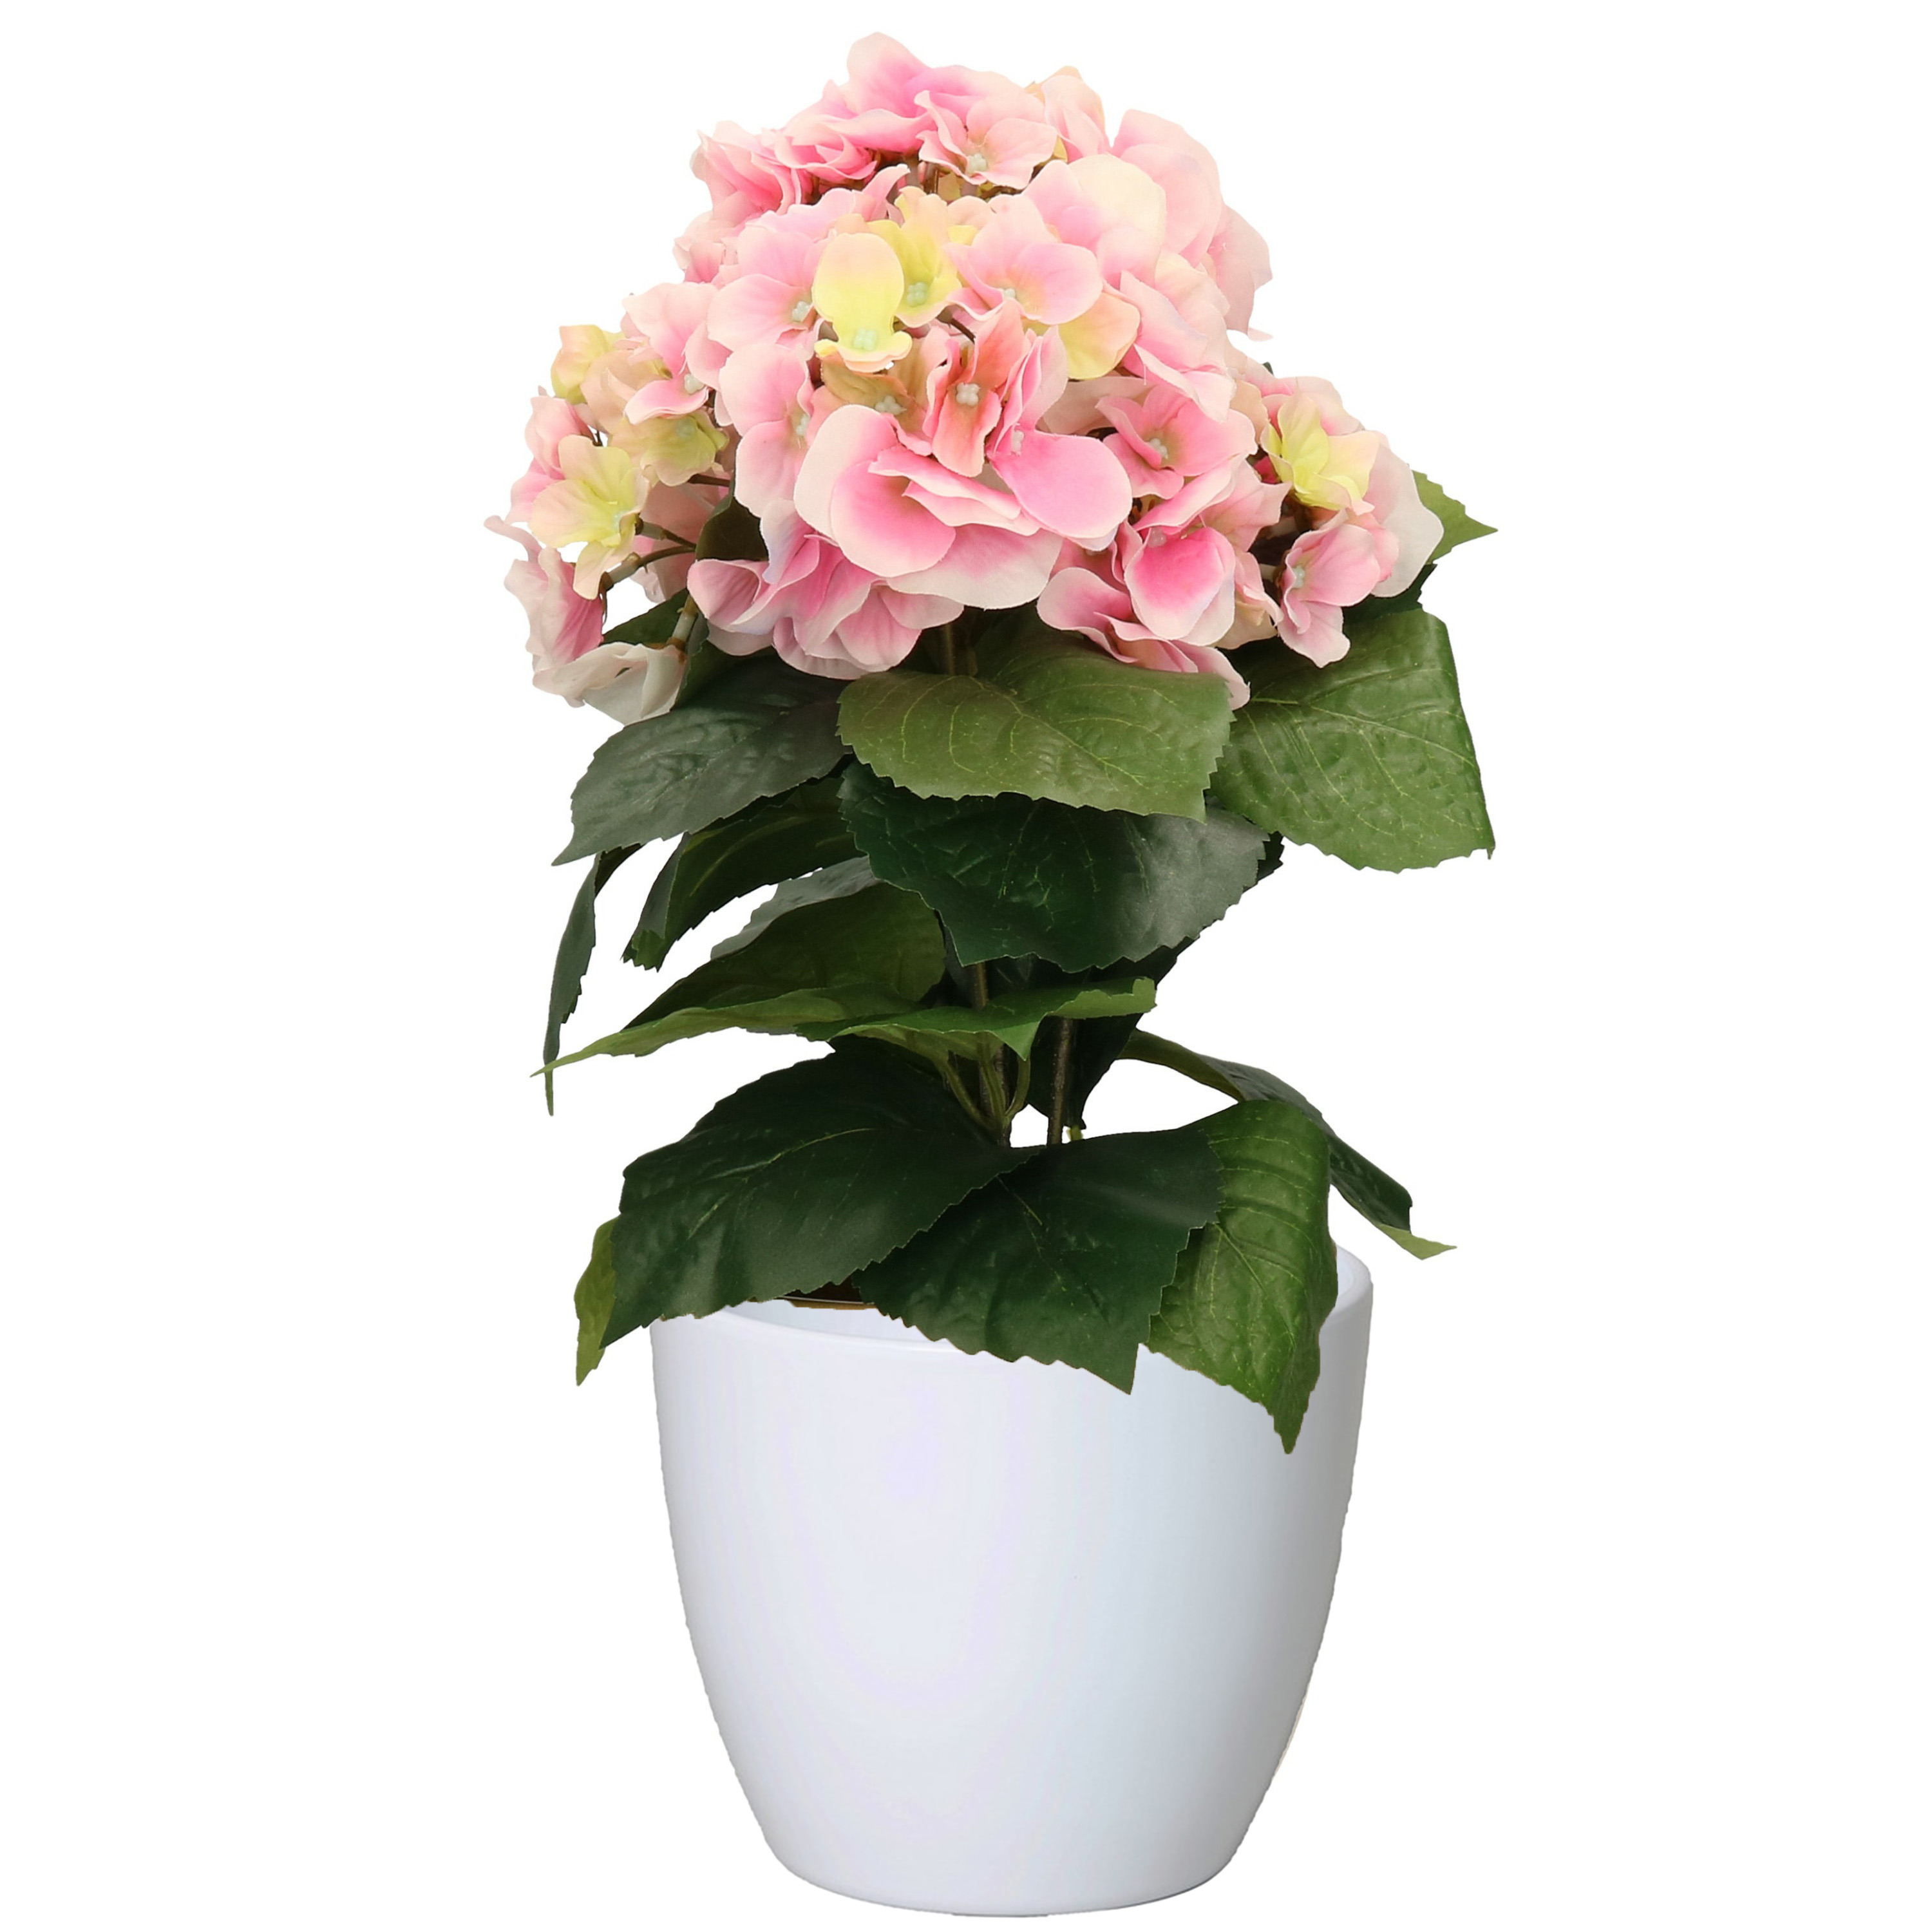 Hortensia kunstplant met bloemen lichtroze in pot wit 40 cm hoog